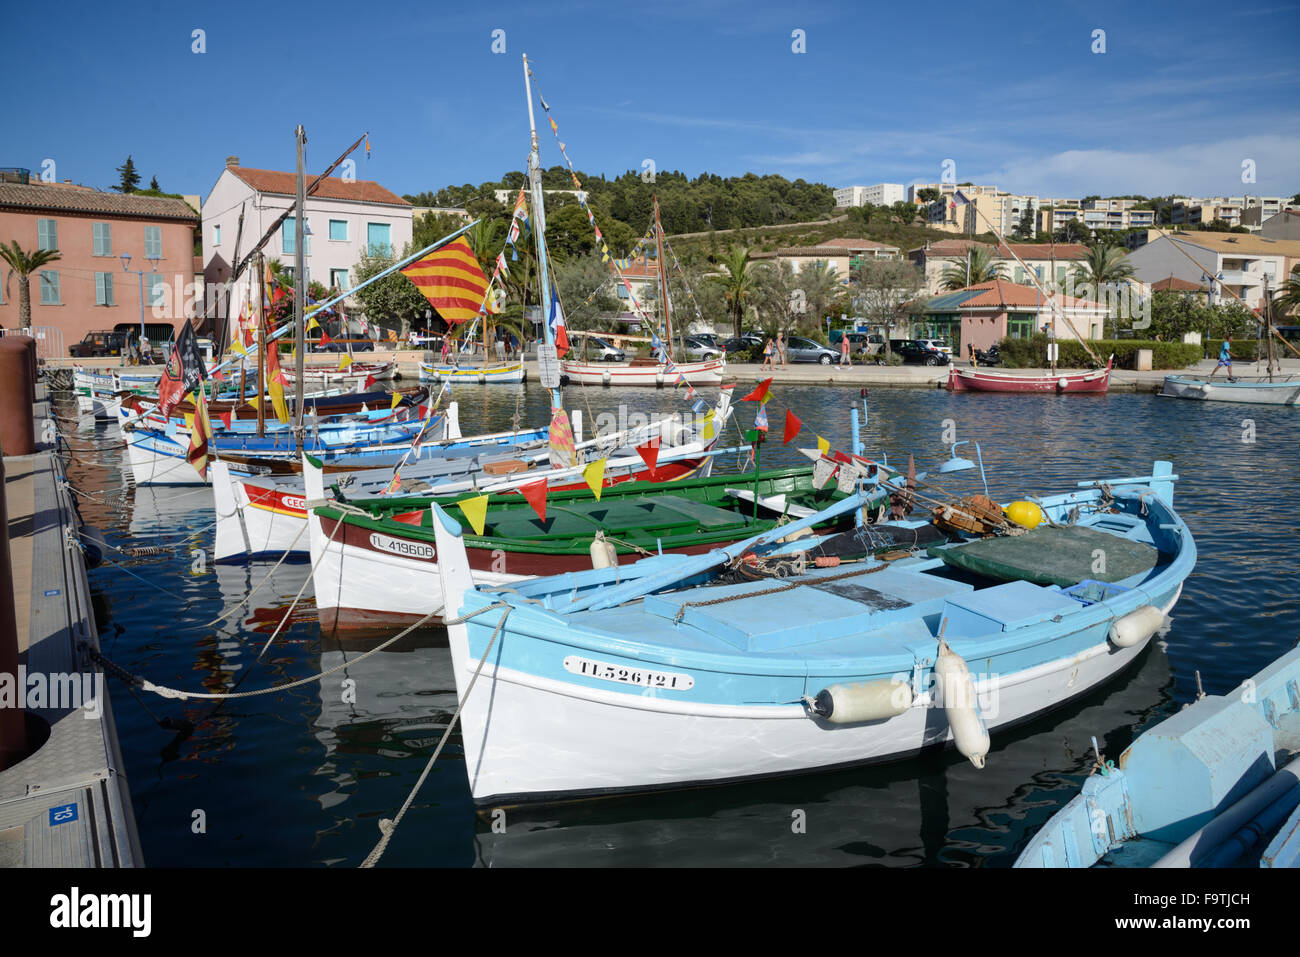 In legno tradizionali barche da pesca noto come Barquettes nel vecchio porto di Saint-Mandrier-sur-Mer, vicino a Toulon Var Provence Francia Foto Stock